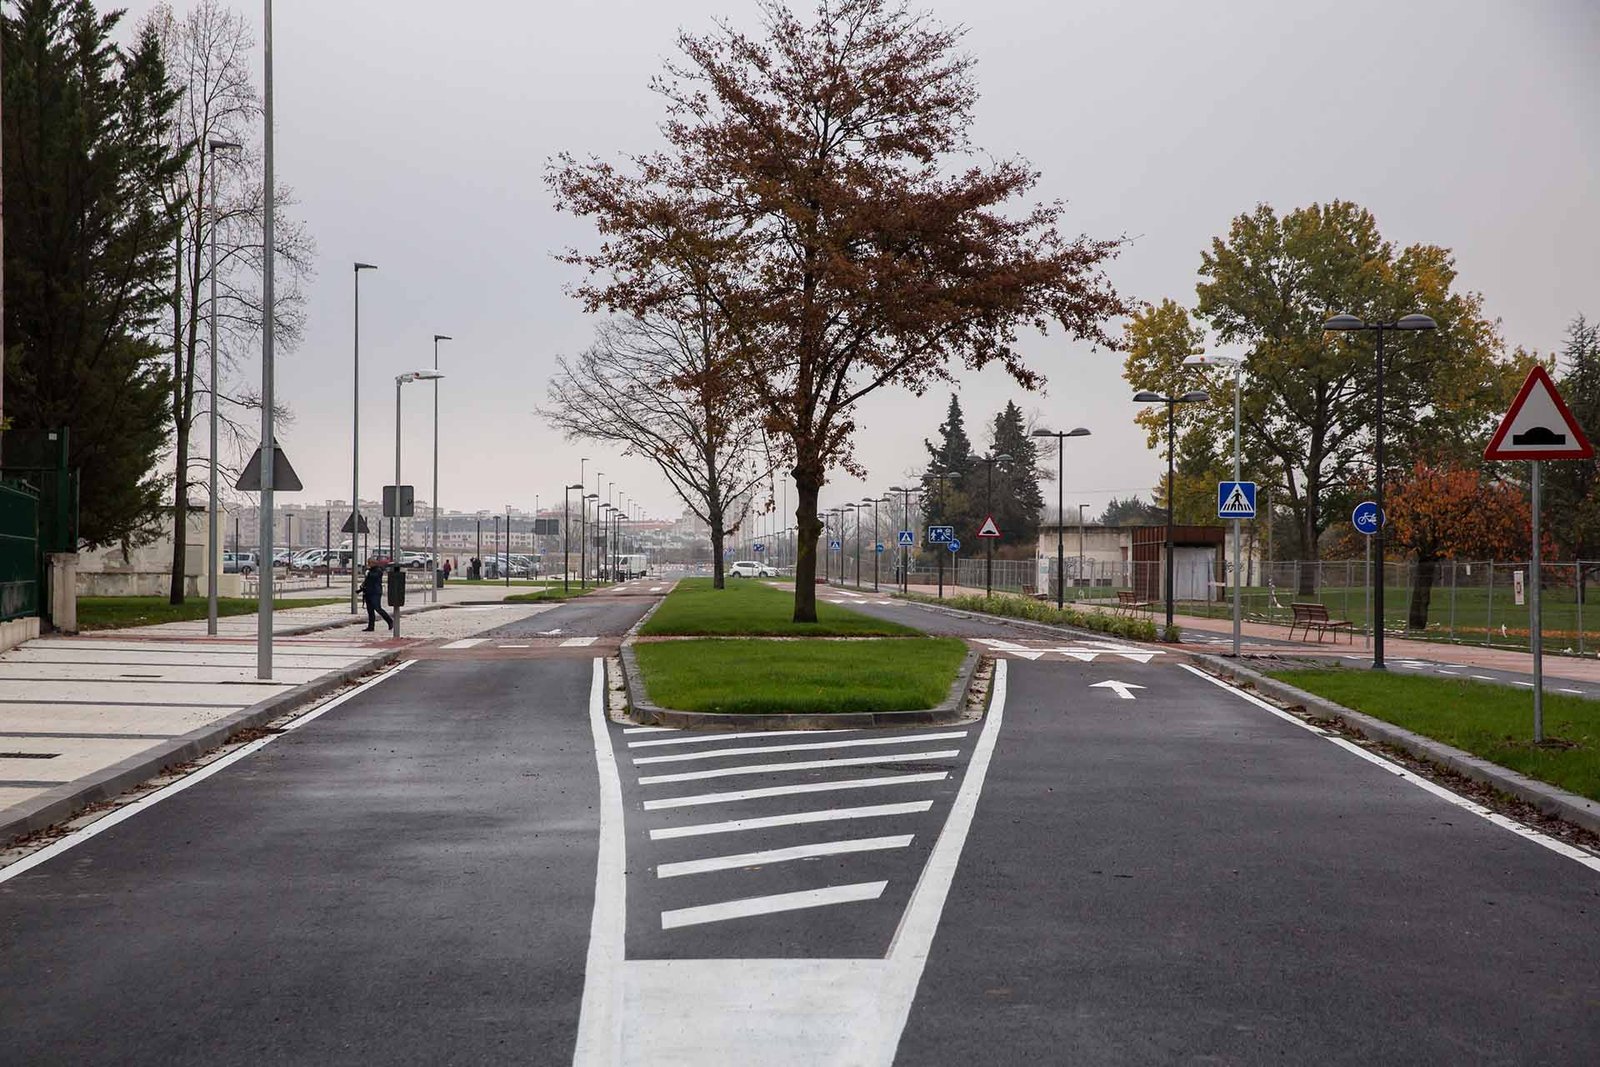 Se abren al tráfico y al tránsito peatonal los viales y la nueva urbanización del sur del barrio de Txantrea, en el límite con el futuro parque del Camino de Santiago